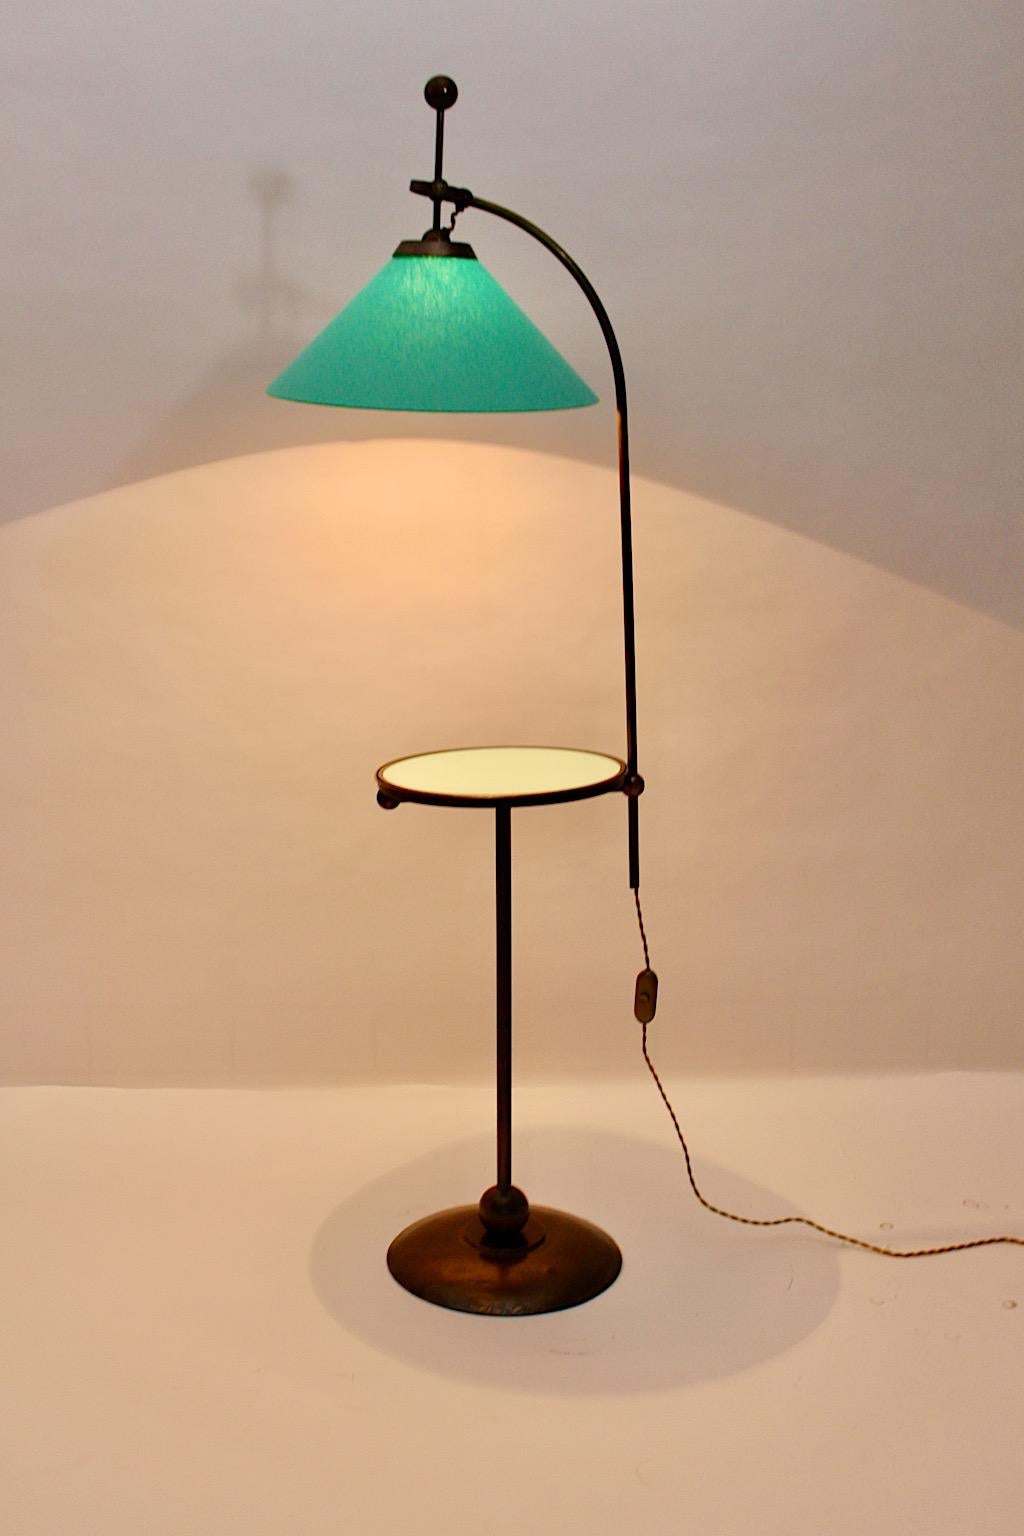 Art Deco Stehlampe aus vermessingtem Metall mit hellgrünem oder türkisfarbenem Glas und einem neuen handgefertigten Lampenschirm aus Textilgewebe um 1925 Österreich.
Eine elegante und raffinierte Art Deco Stehlampe mit integriertem kleinen